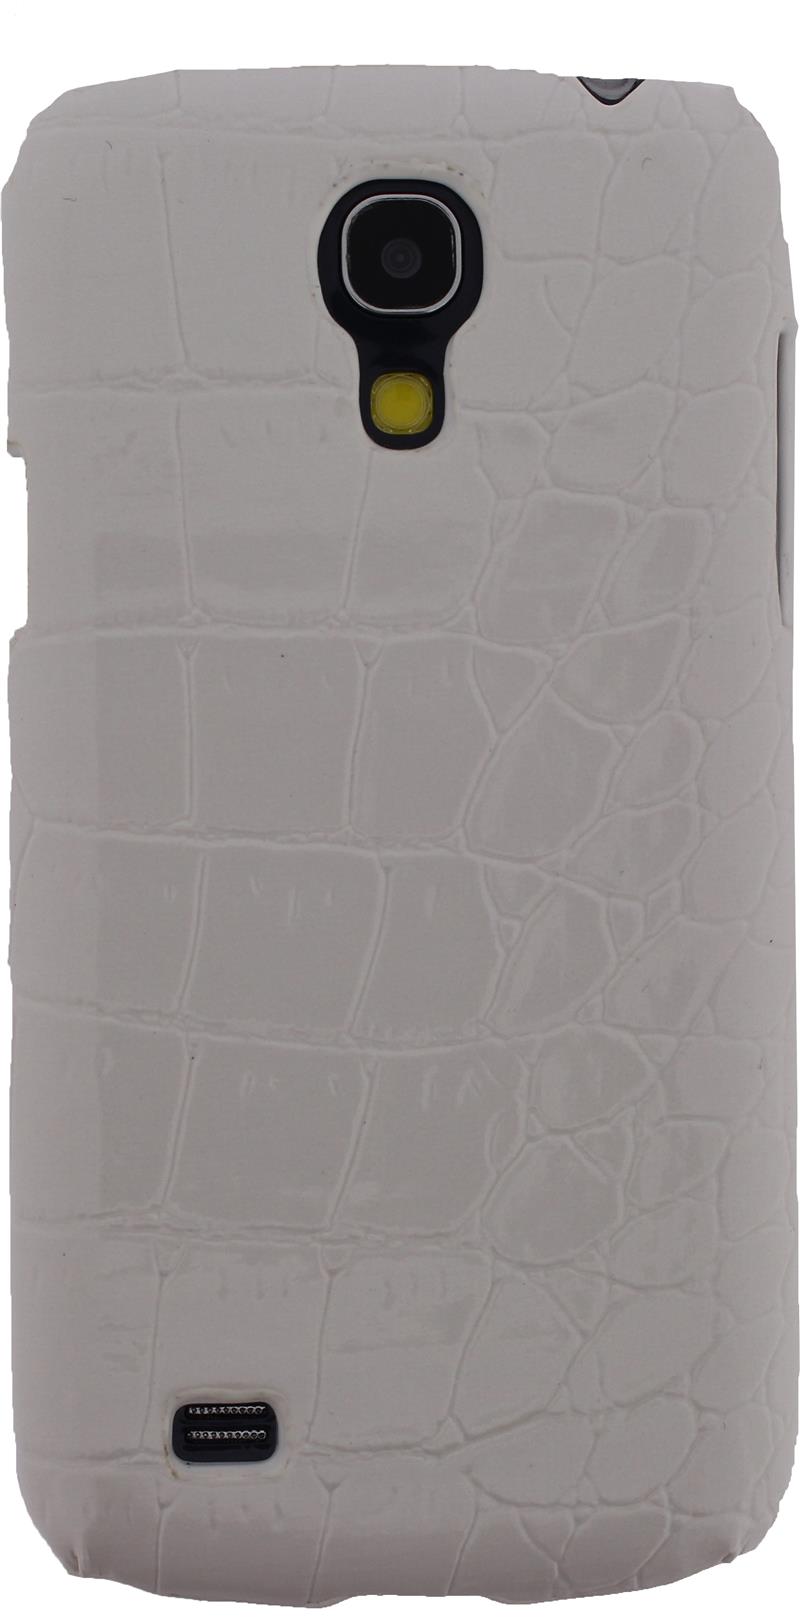 Xccess Croco Cover Samsung Galaxy S4 Mini I9195 White